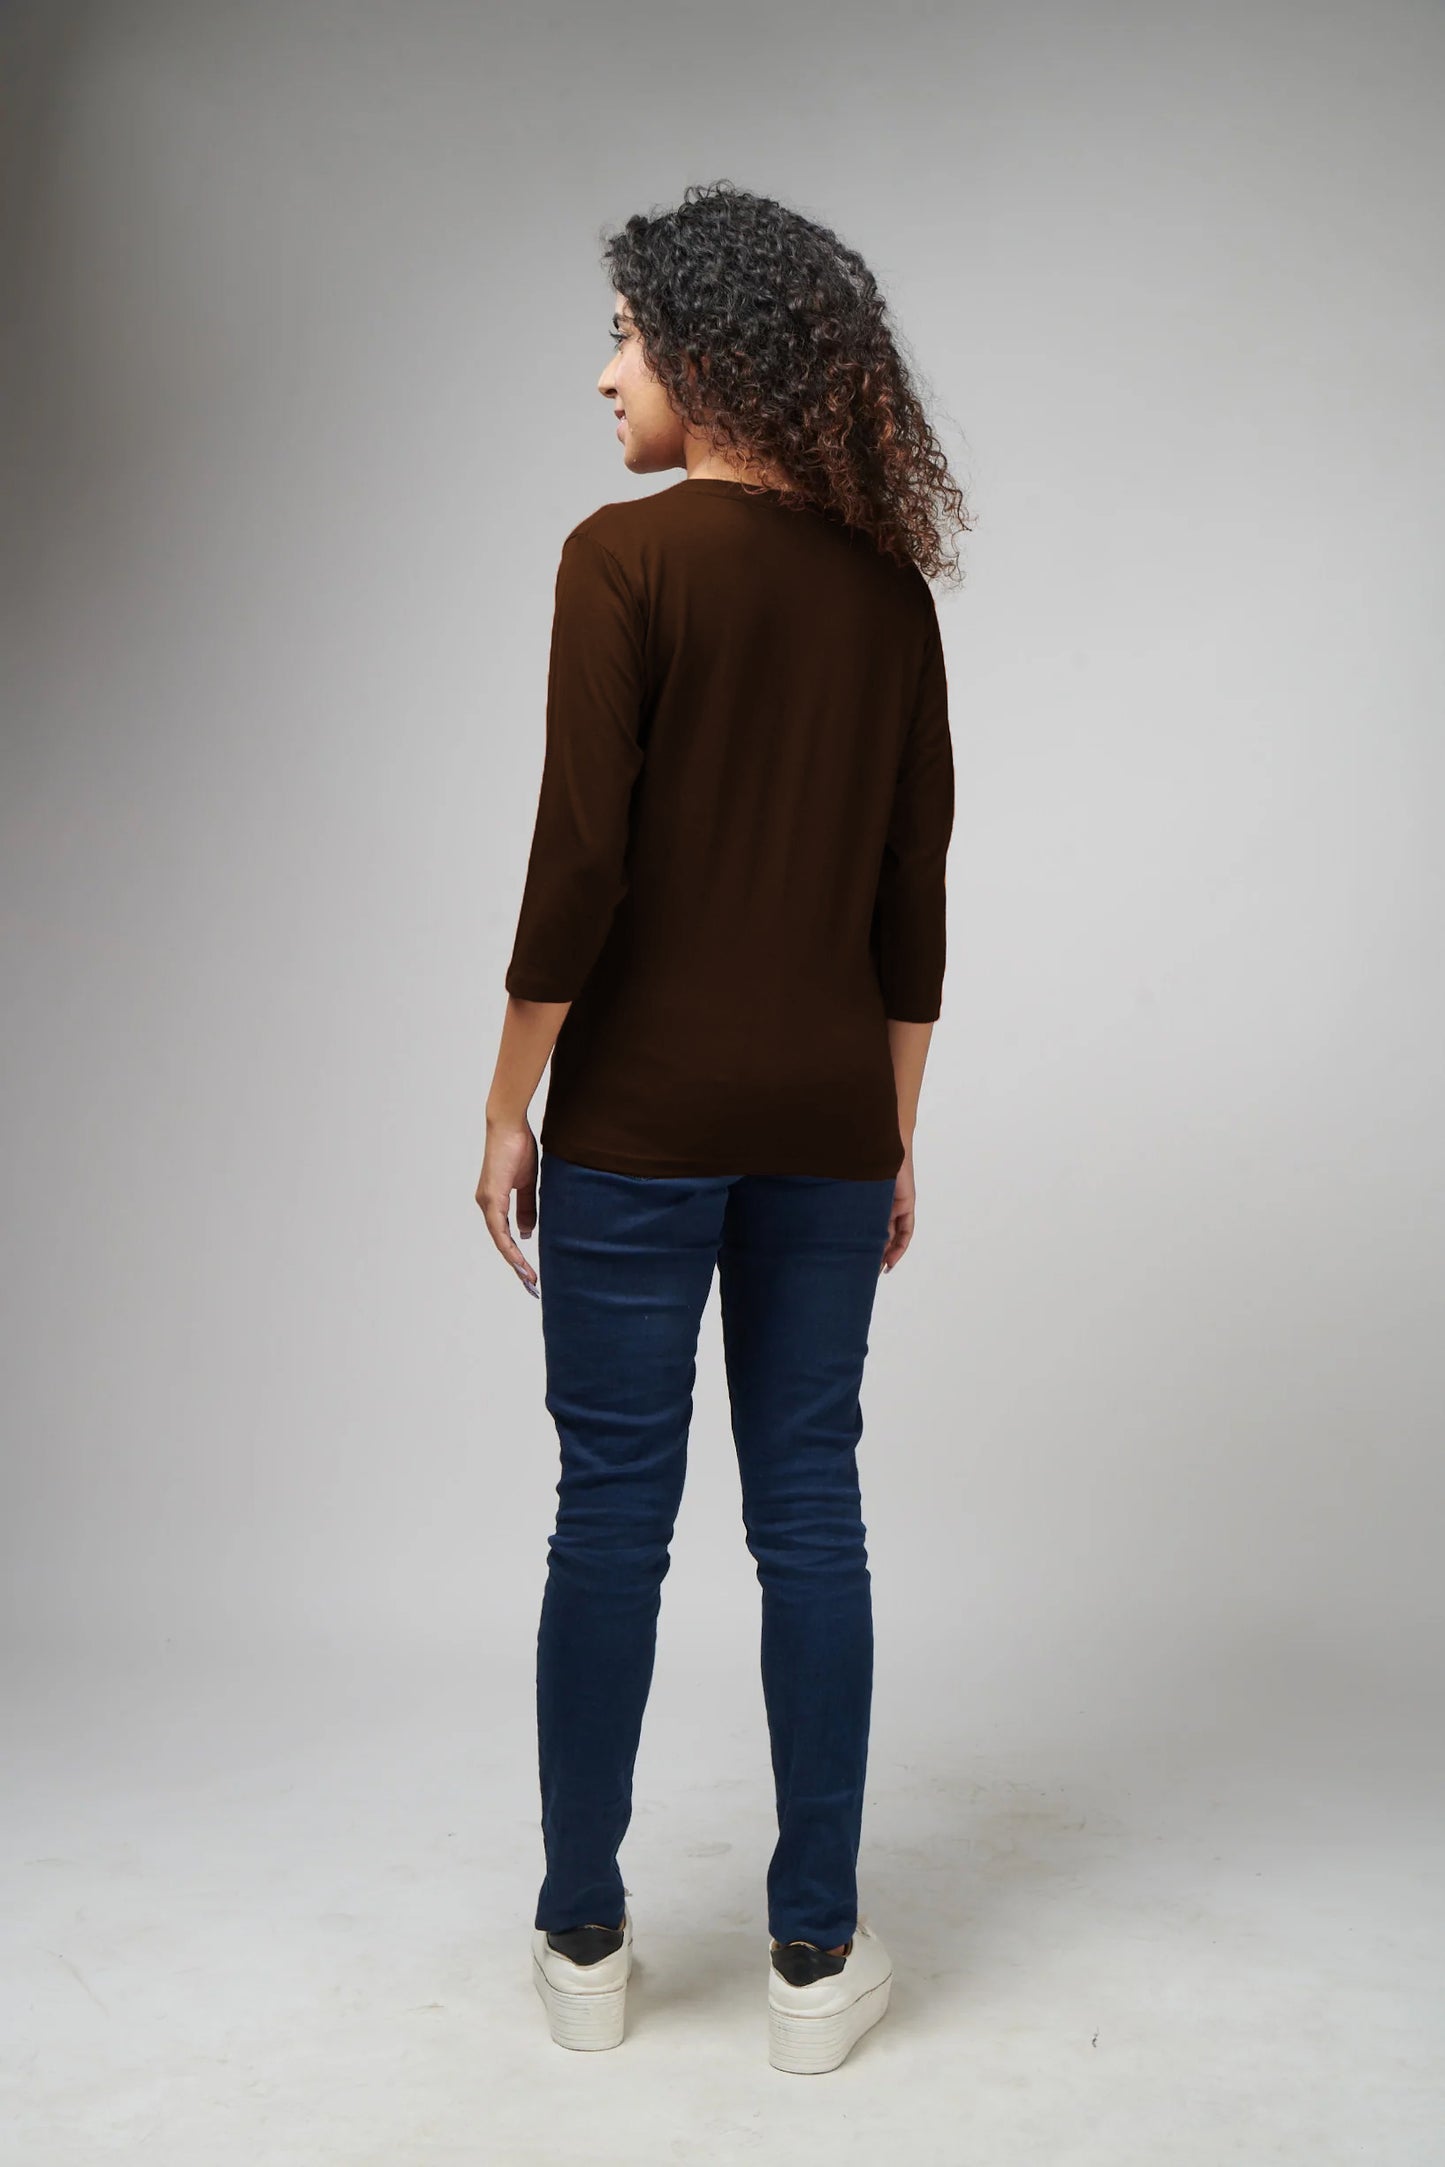 Women's Basic Brown Full Sleeves T-Shirt